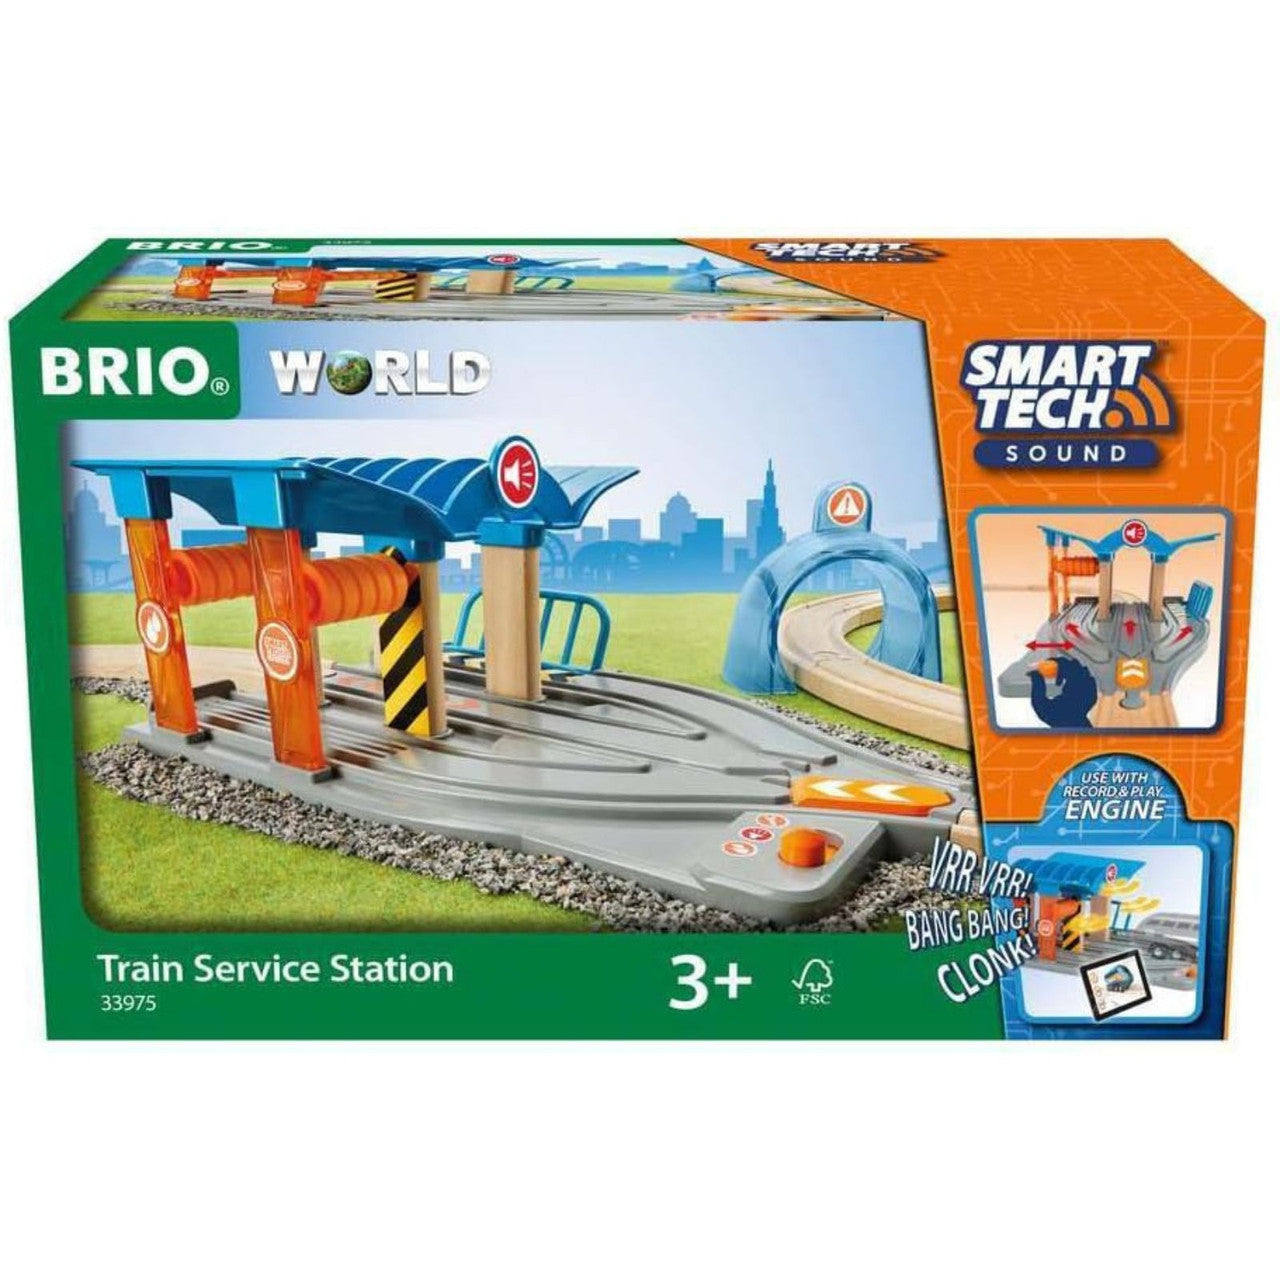 BRIO TRAIN SERVICE STATION SMART TECH 33975